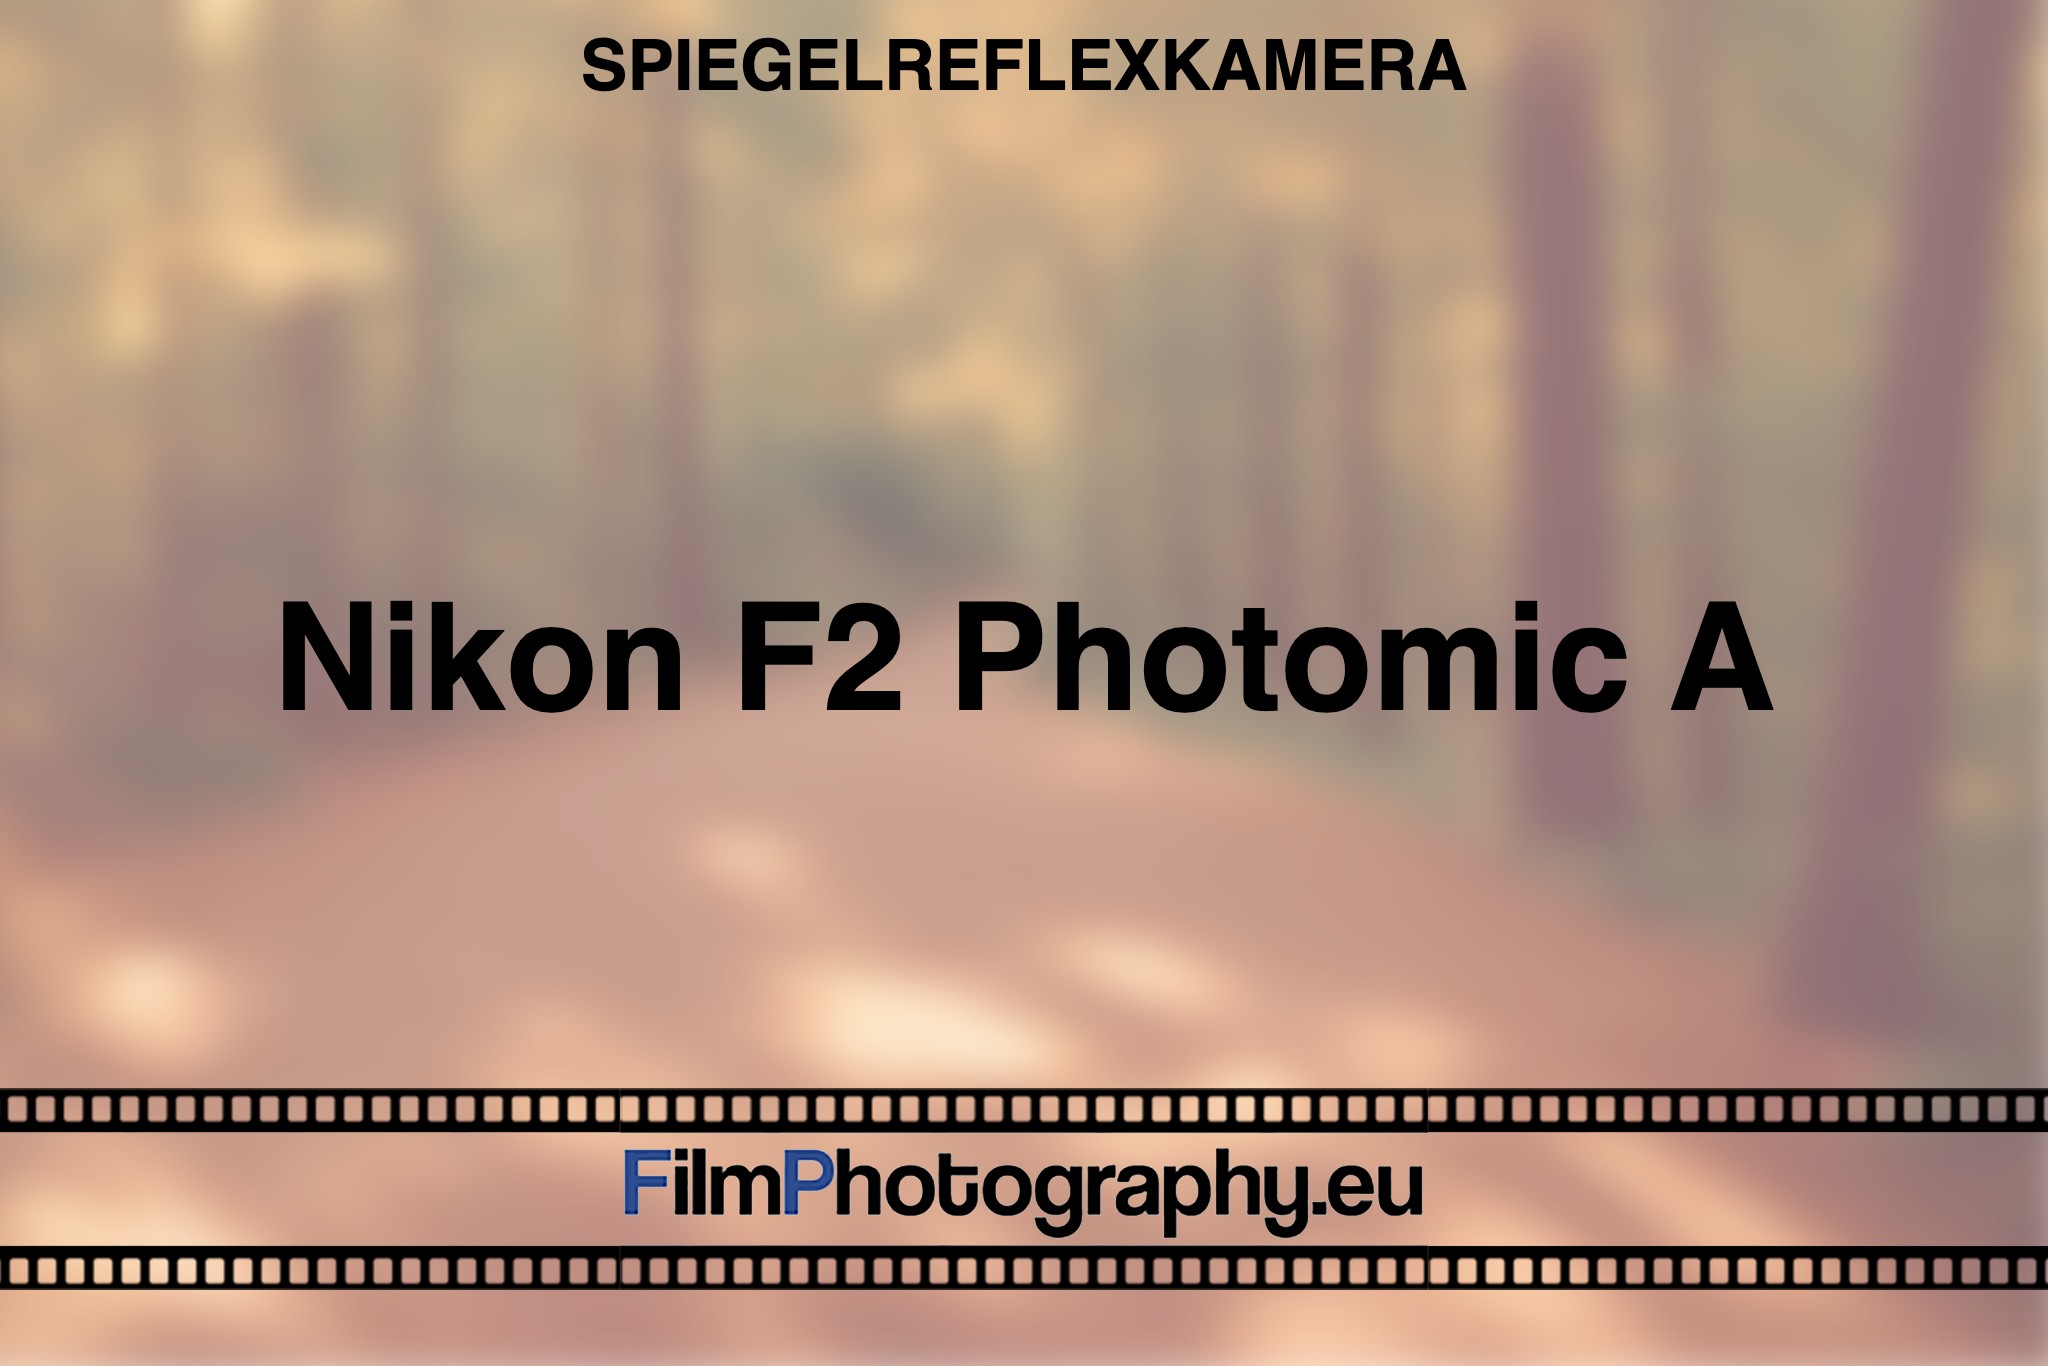 nikon-f2-photomic-a-spiegelreflexkamera-bnv